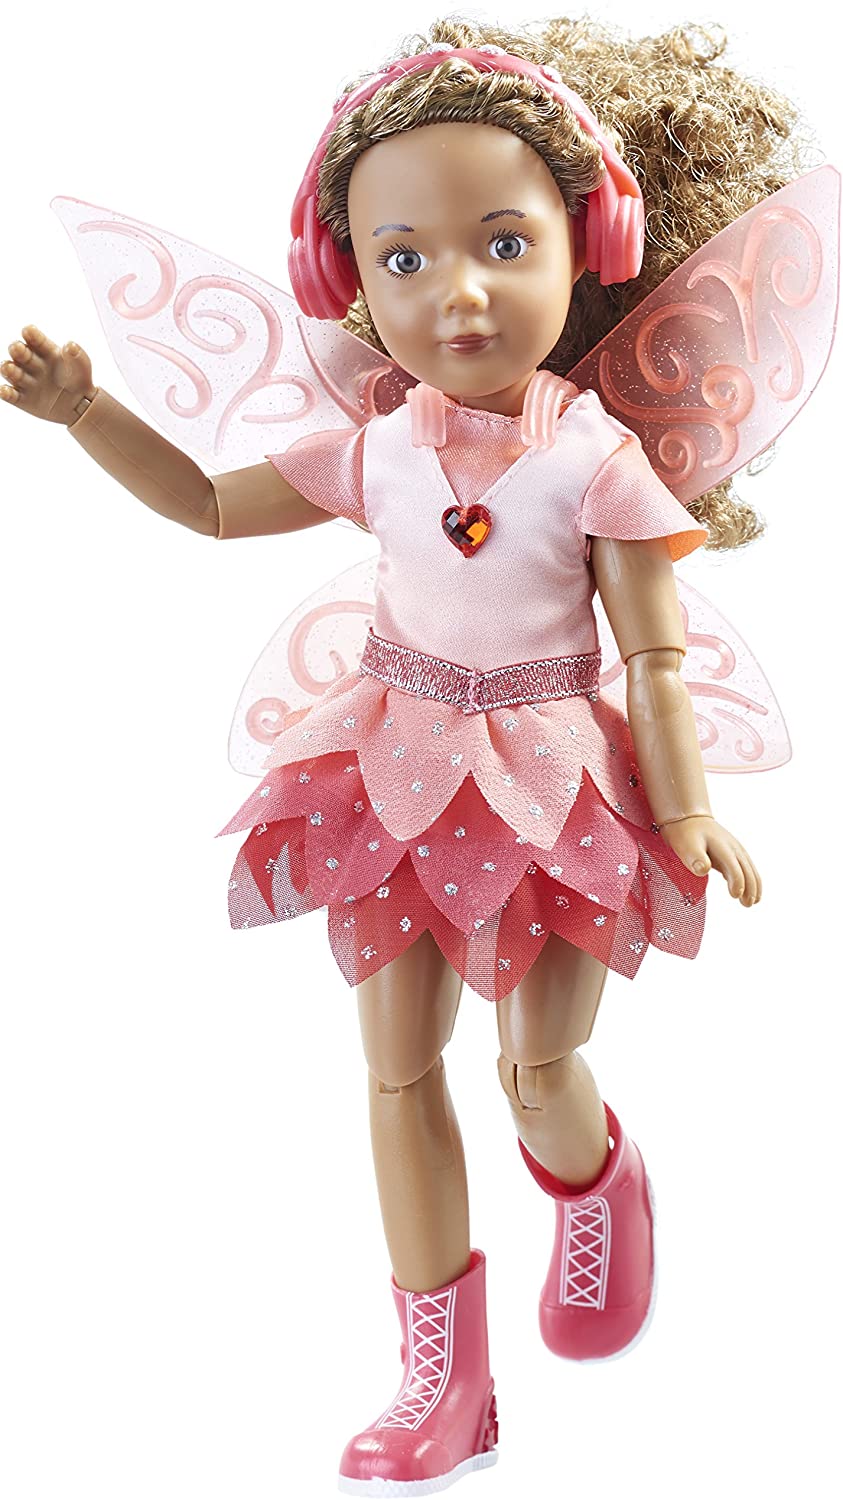 Кукла Джой, 23 см делюкс набор с 2 комплектами одежды  